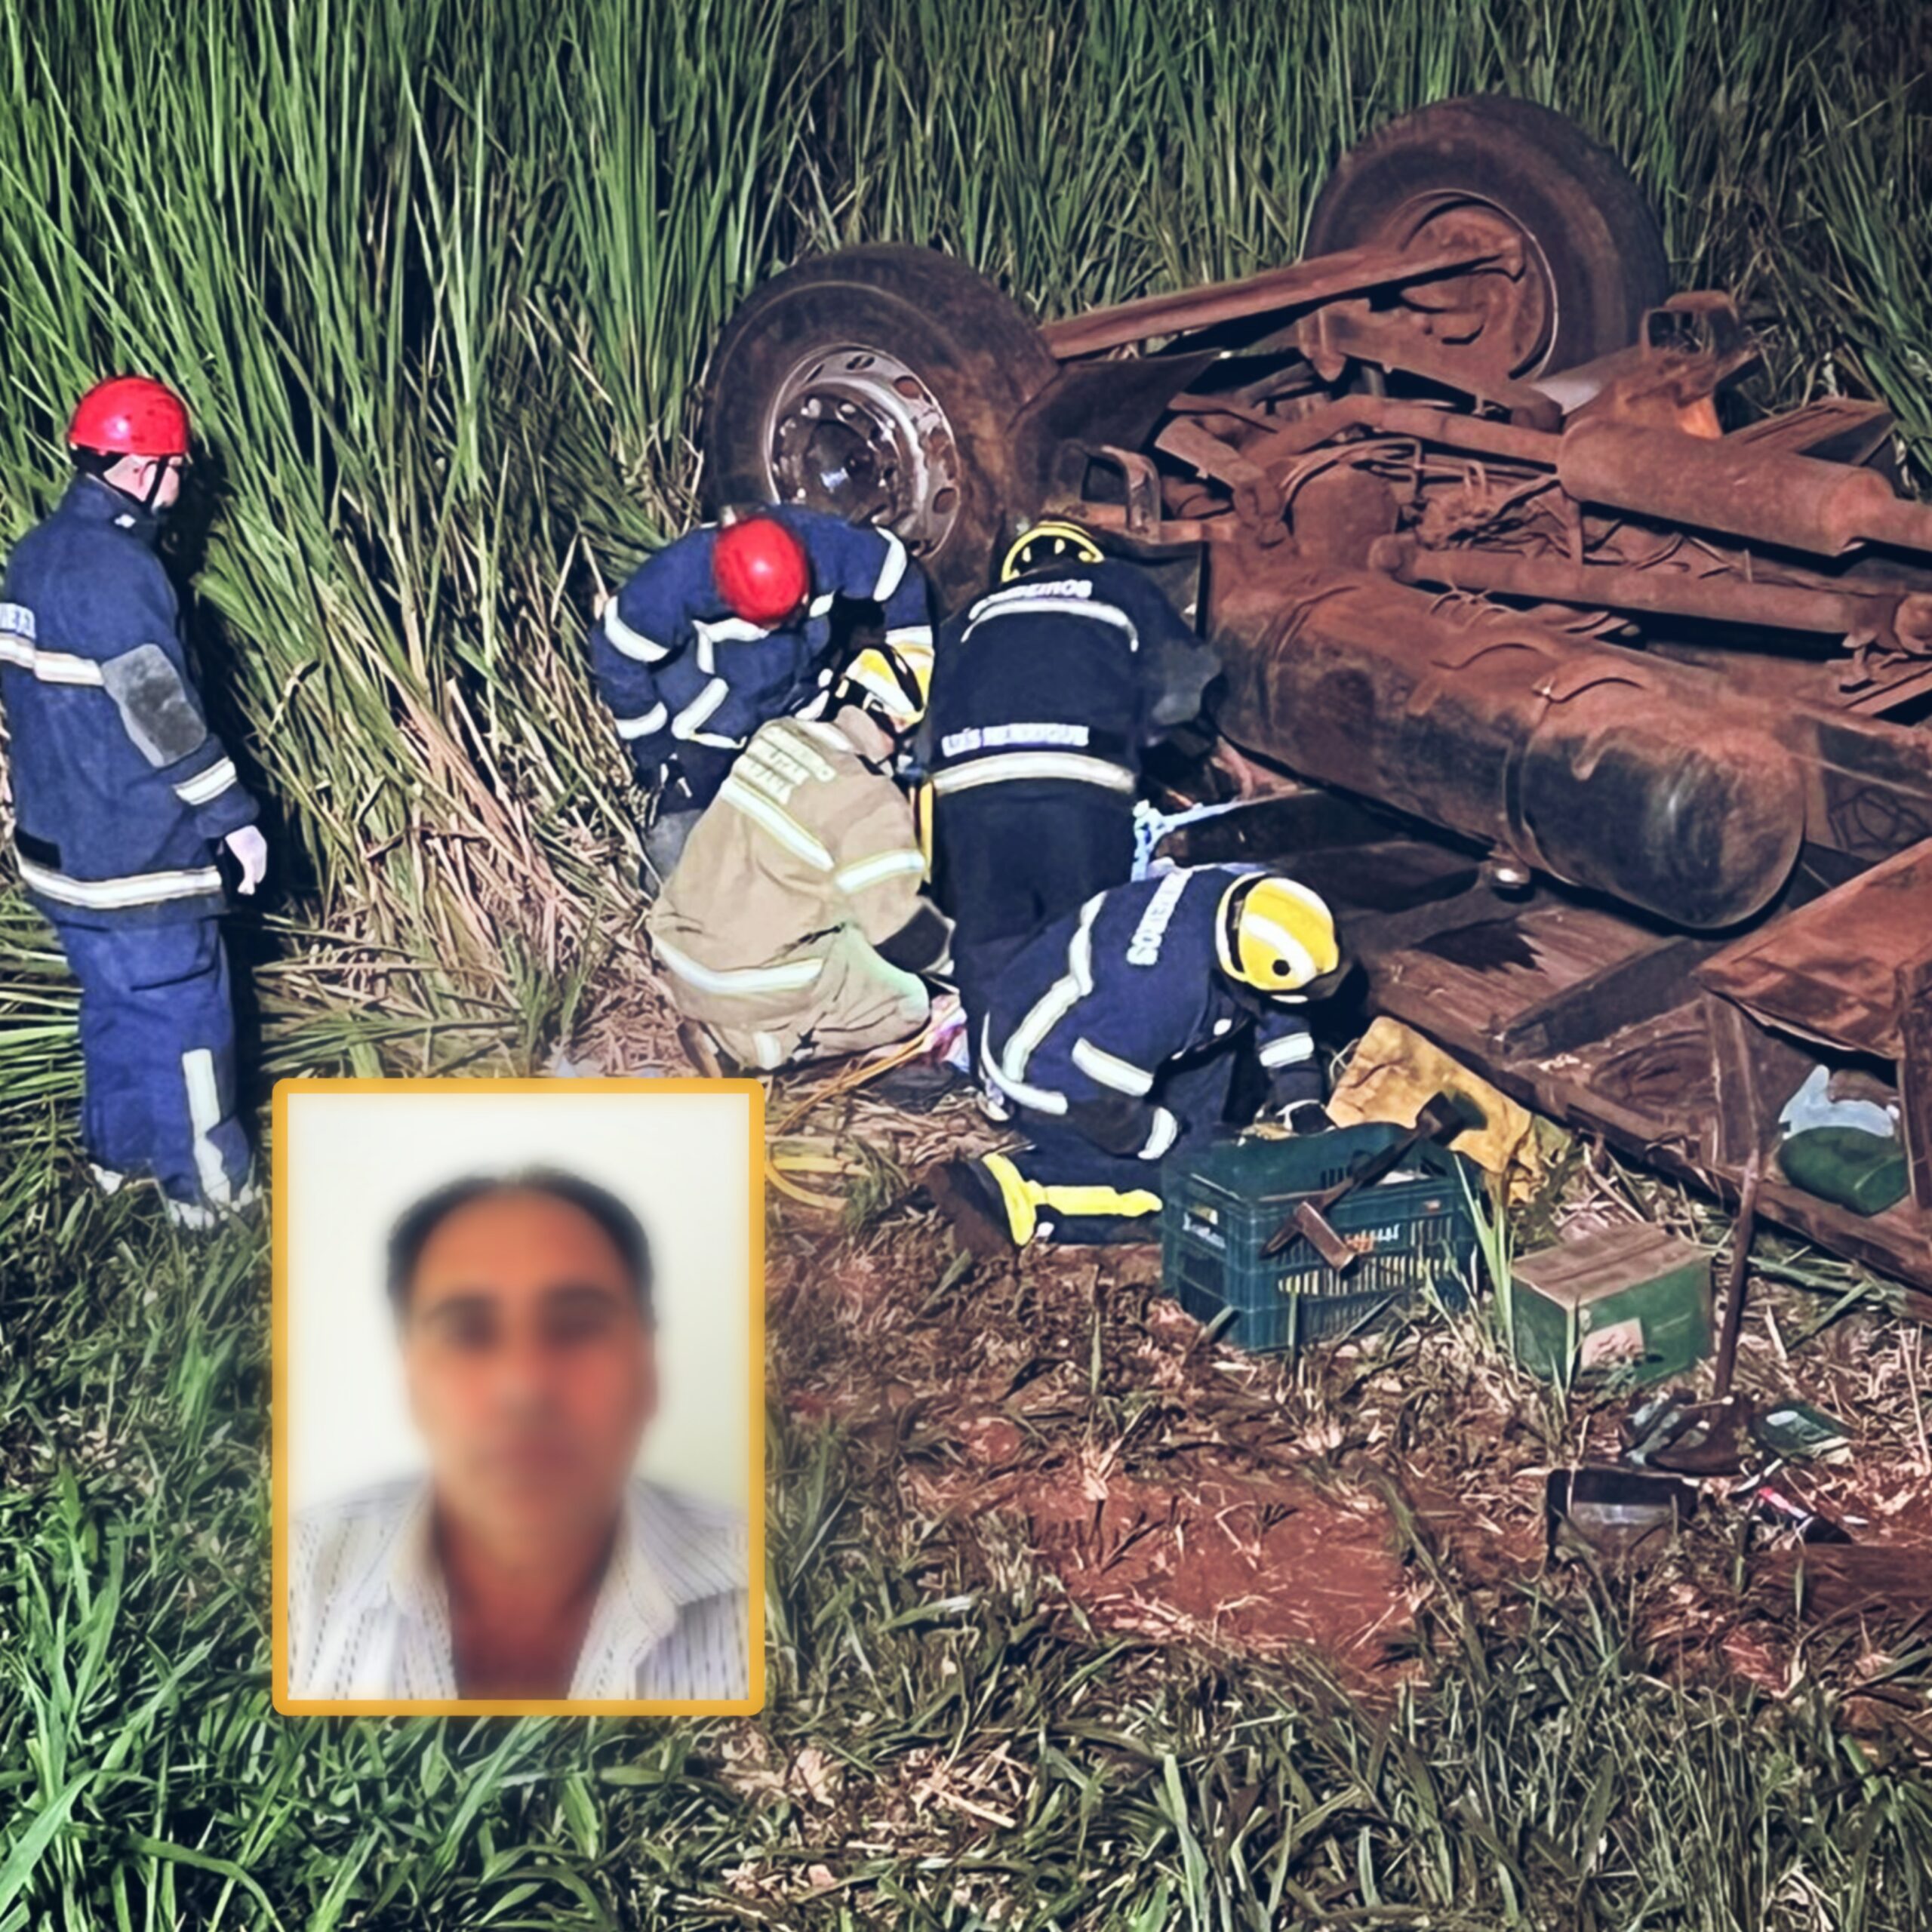 Fotos de Caminhoneiro morre após capotamento na rodovia PR-323